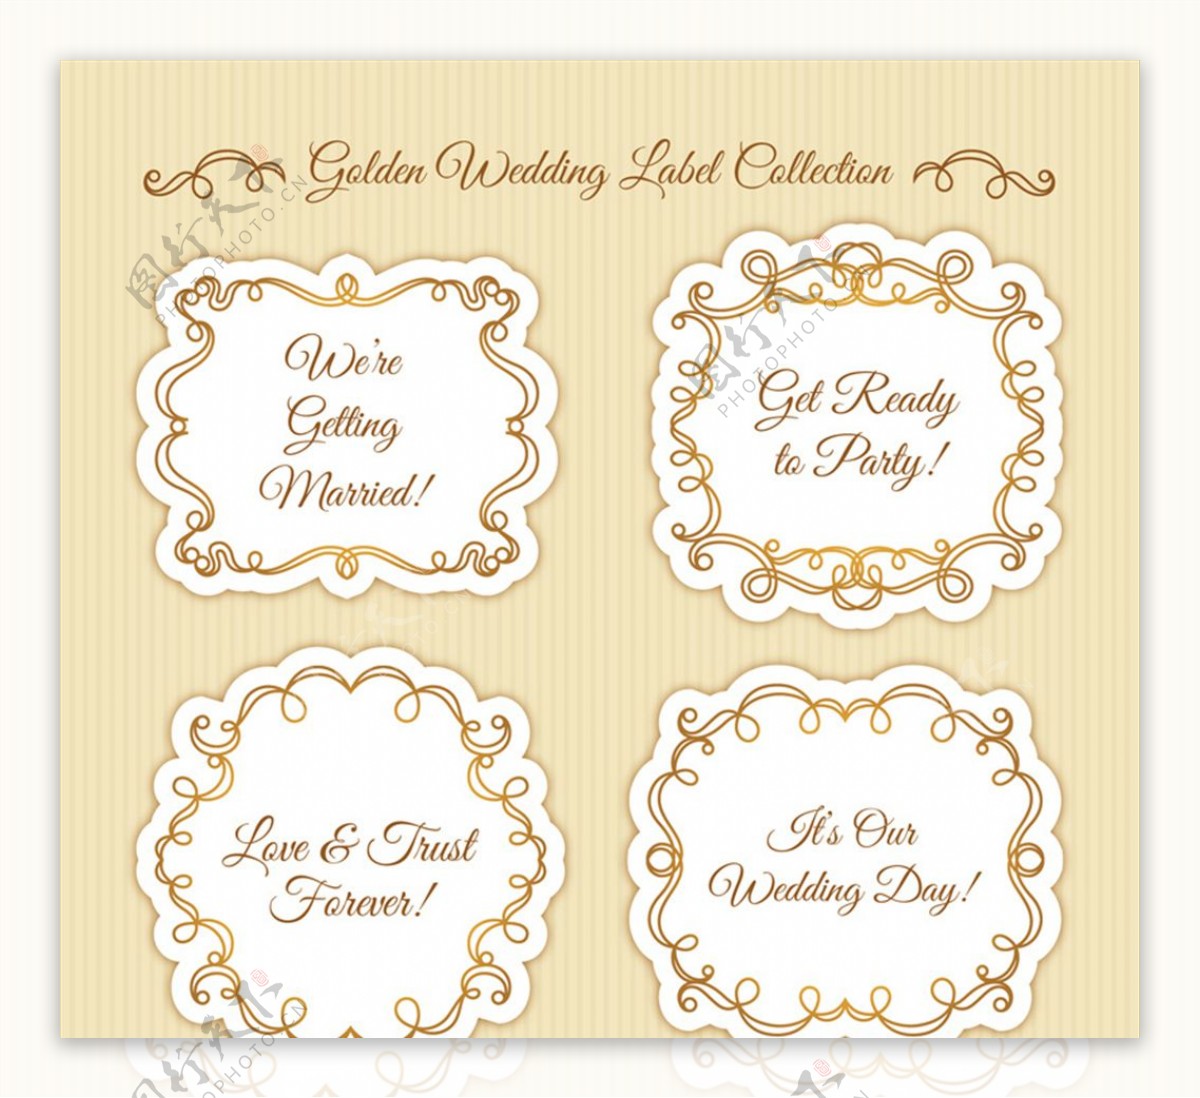 4款金色花边婚礼标签矢量素材